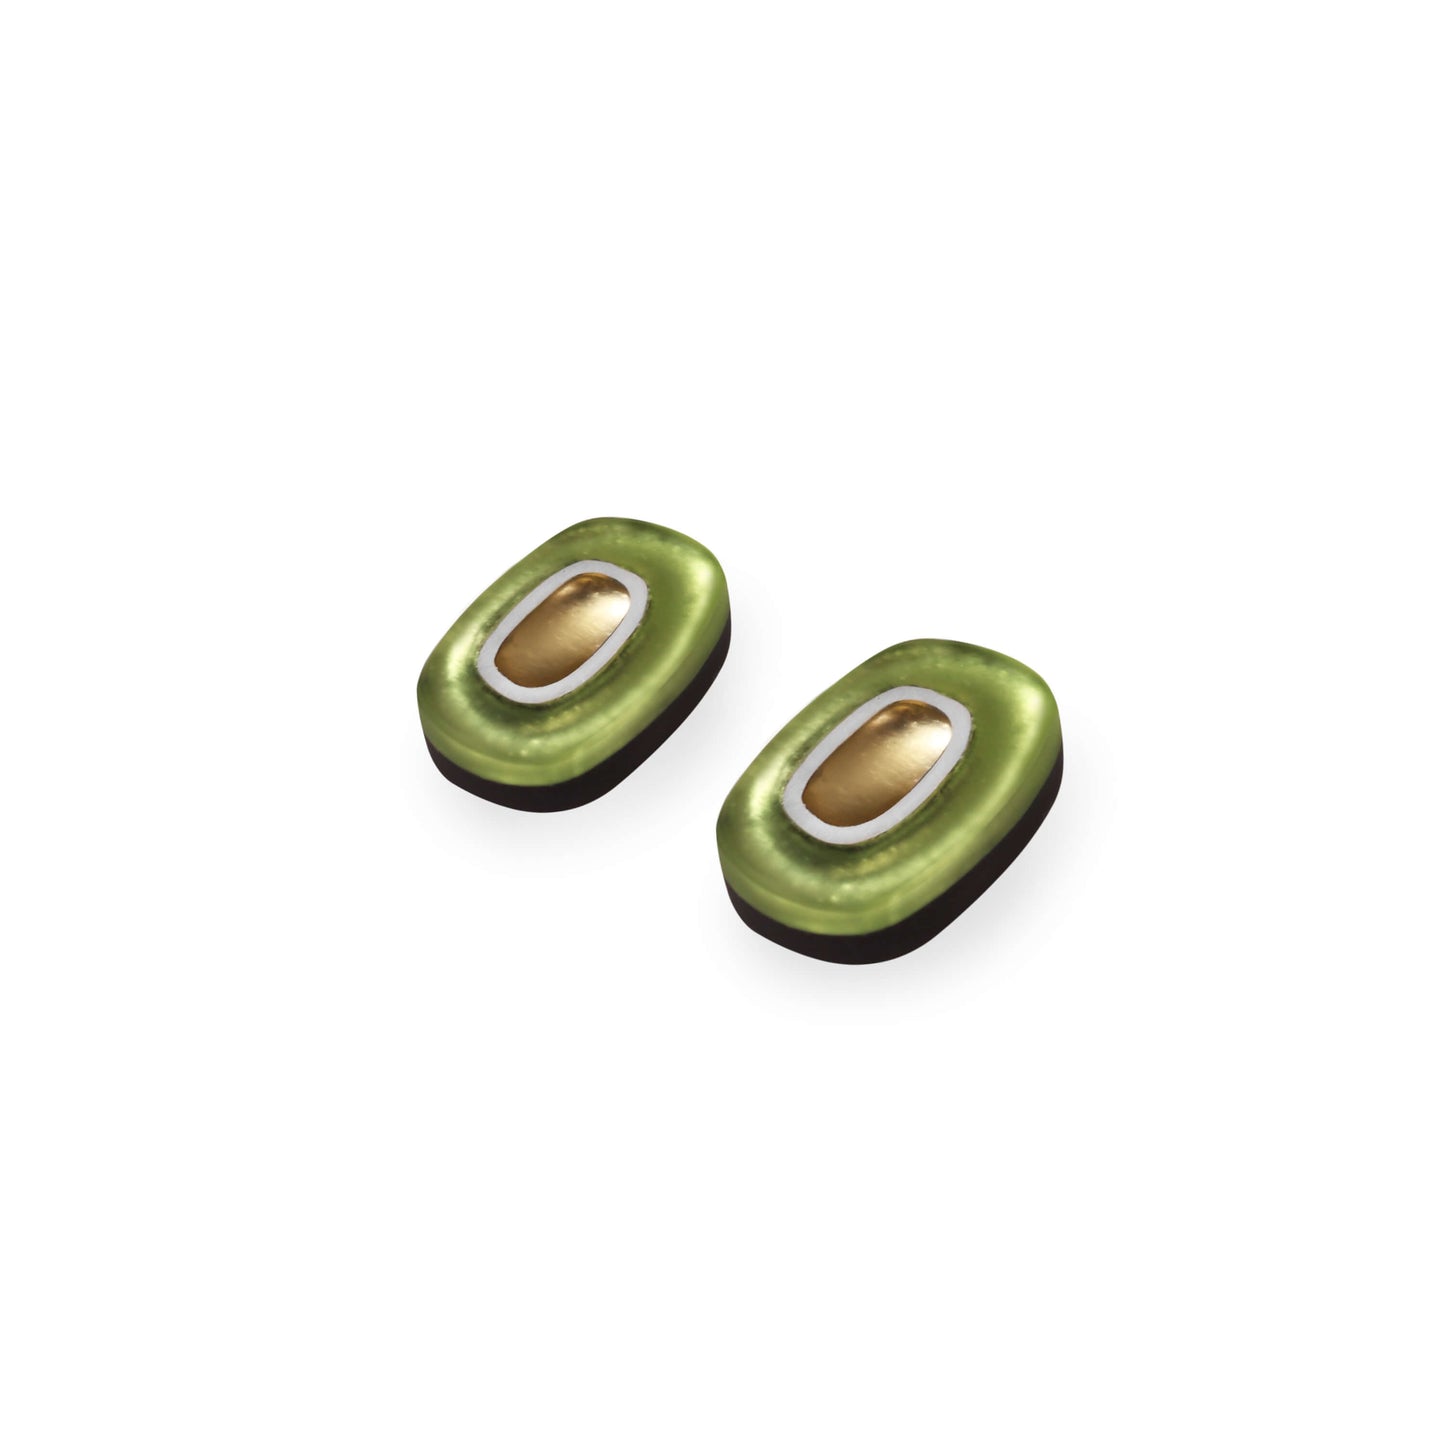 Kiwi Retro Ovals Matte Stud Earrings